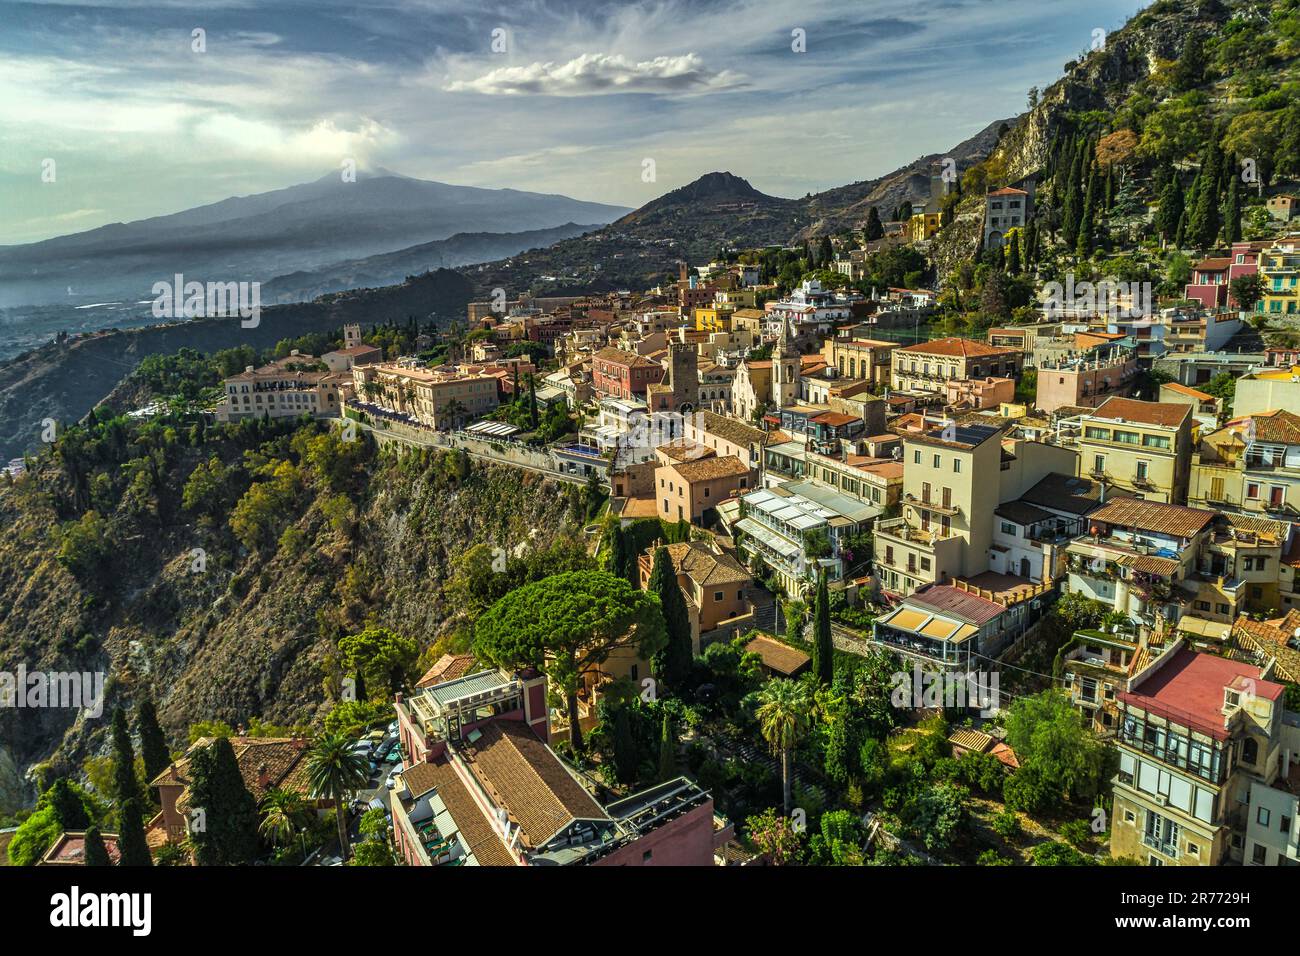 Veduta aerea della città turistica di Taormina, sullo sfondo il vulcano Etna. Taormina, provincia di Messina, Sicilia, Italia, Europa Foto Stock